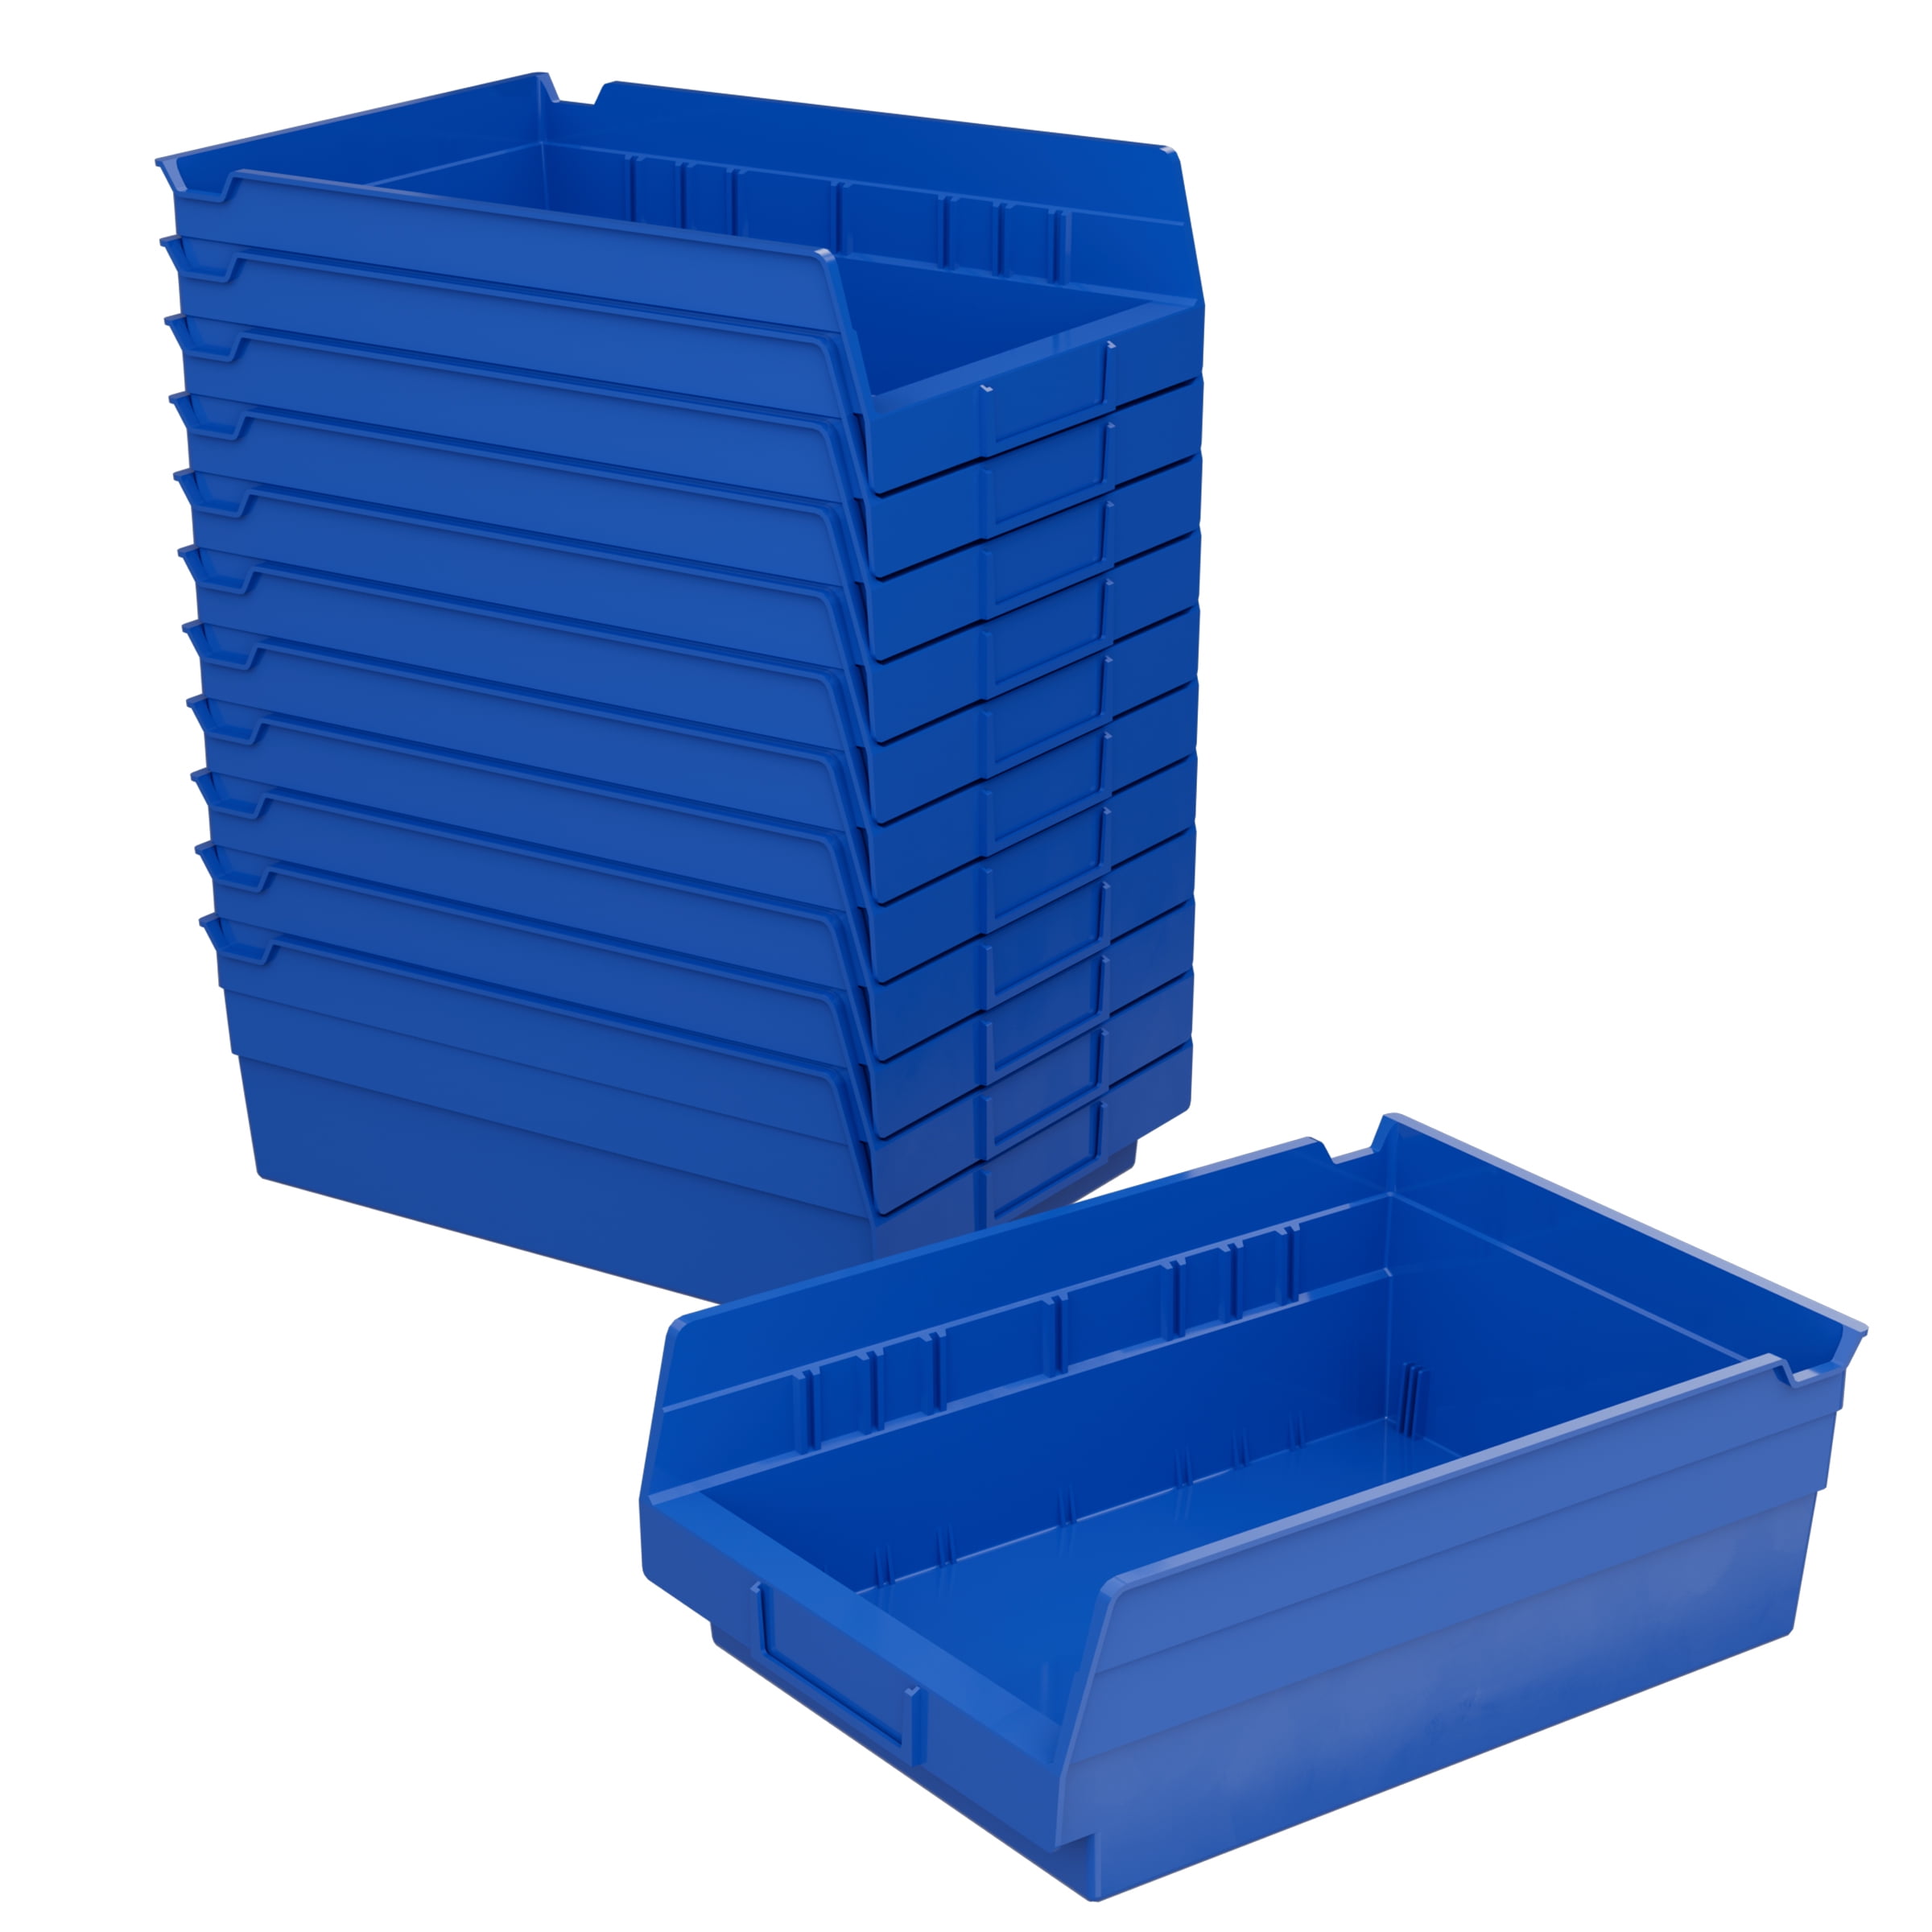 Garage Storage Bins - 30-Compartment Garage Organization, Craft Storage,  Tool Box Organizer Unit (/Red/Blue) by car accessories - AliExpress